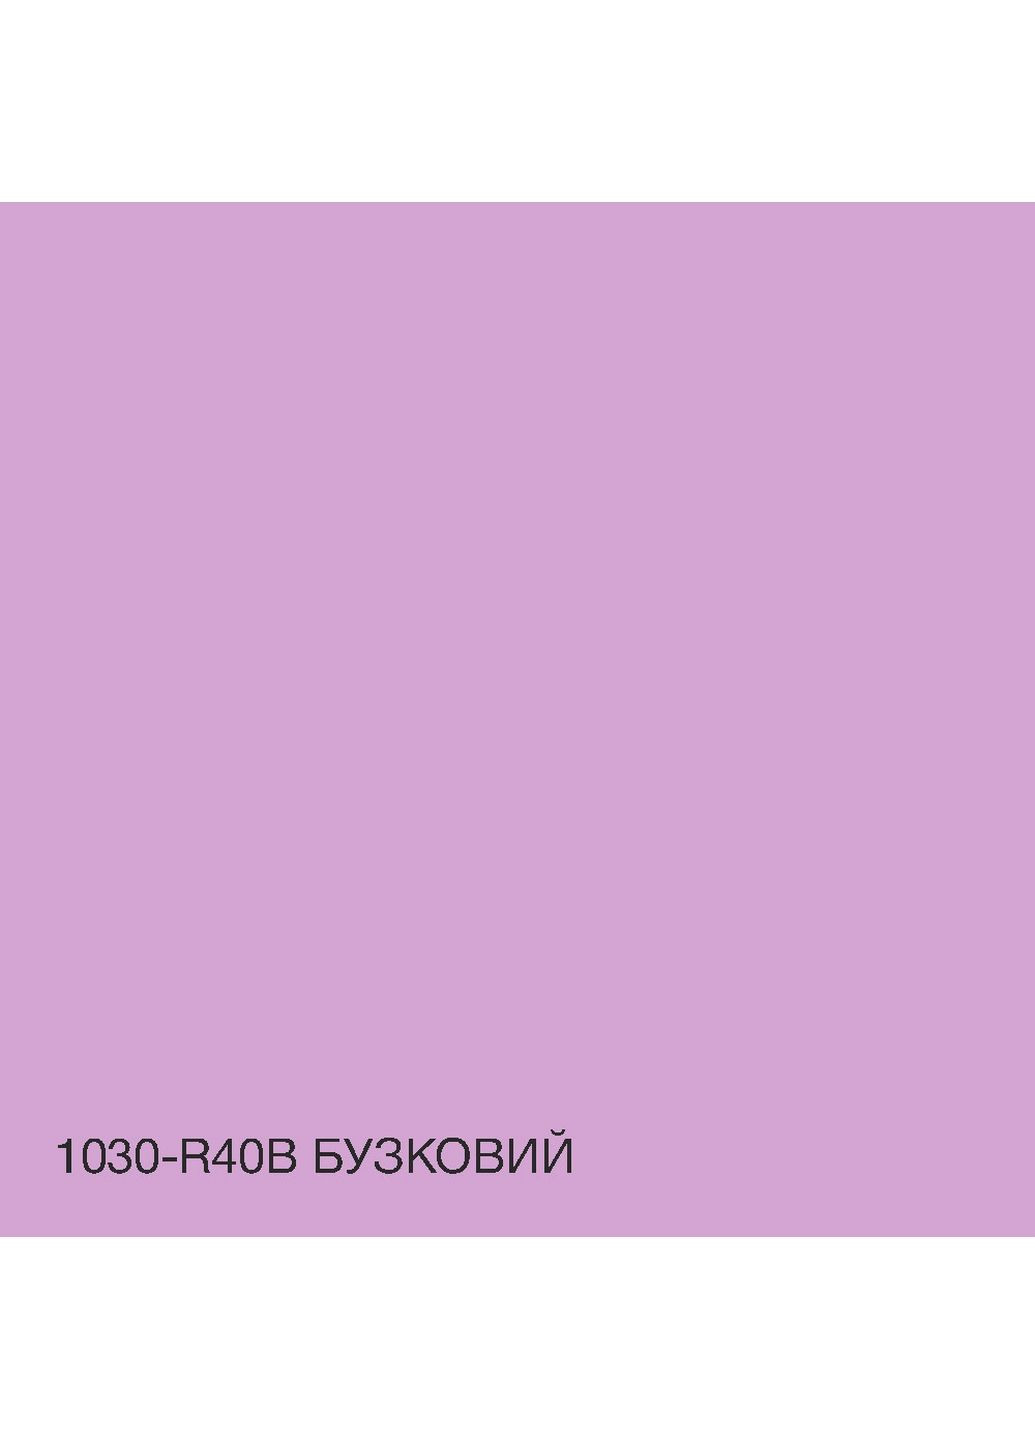 Фасадна фарба акрил-латексна 1030-R40B 5 л SkyLine (289459240)